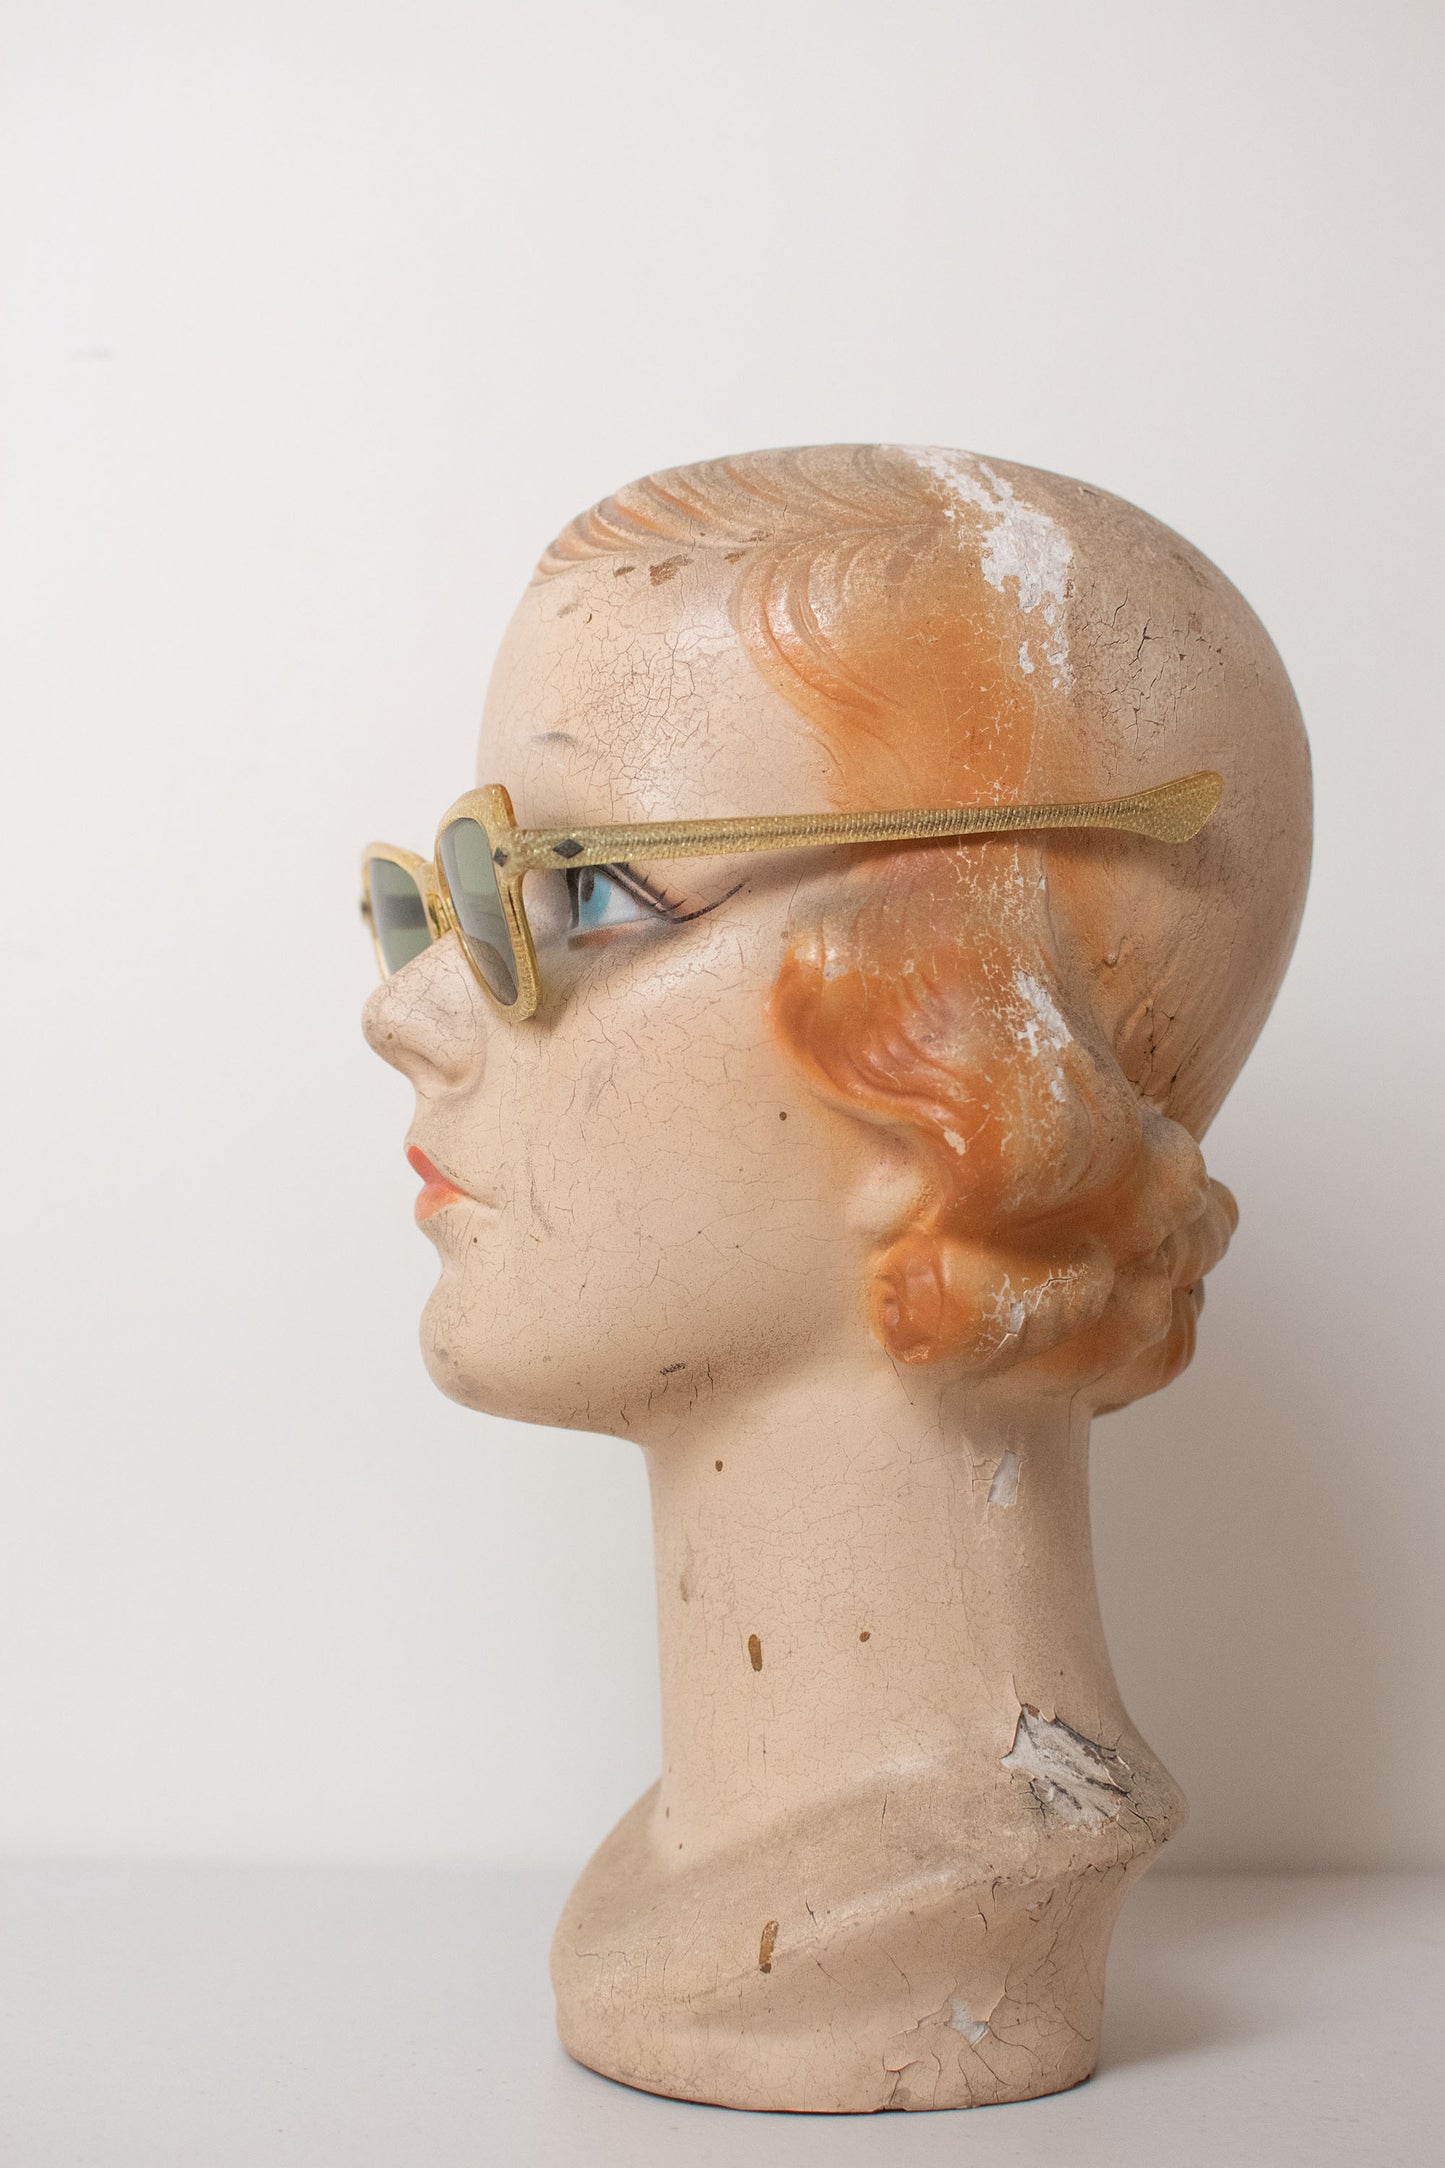 1950s Sunglasses | Gold Glitter